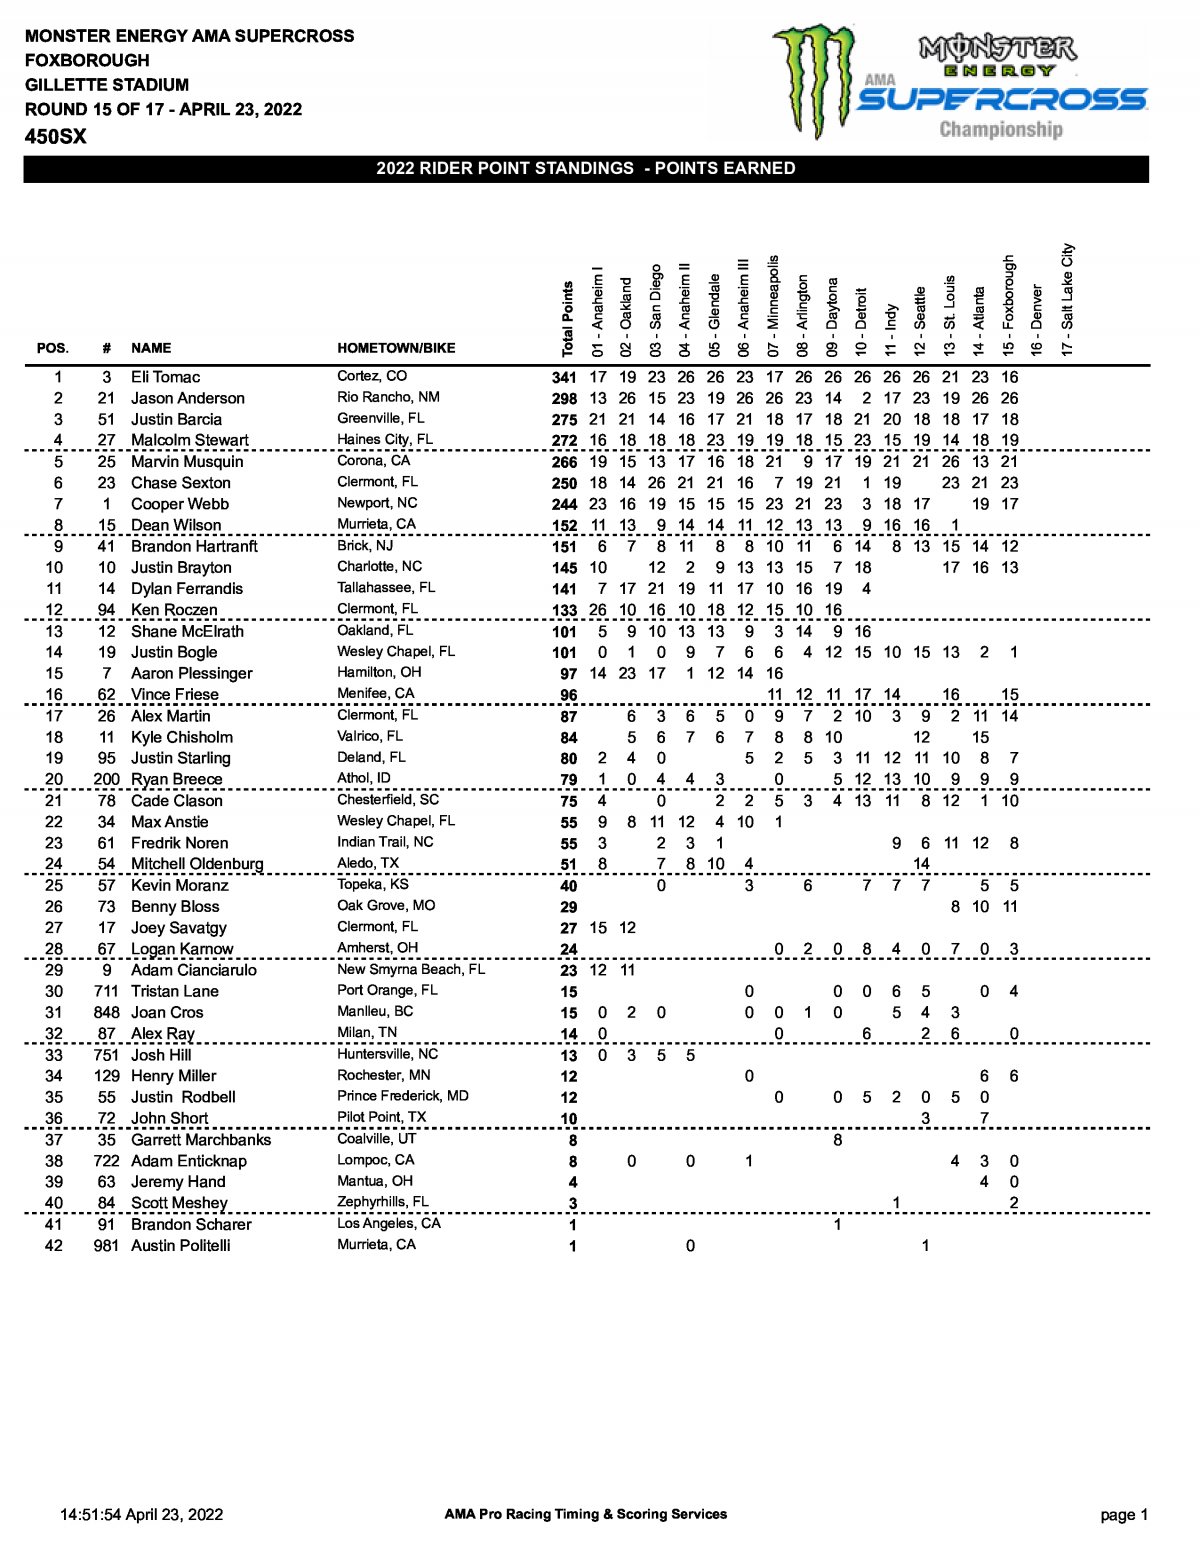 Положение в чемпионате AMA Supercross 450SX по итогам 15 этапа